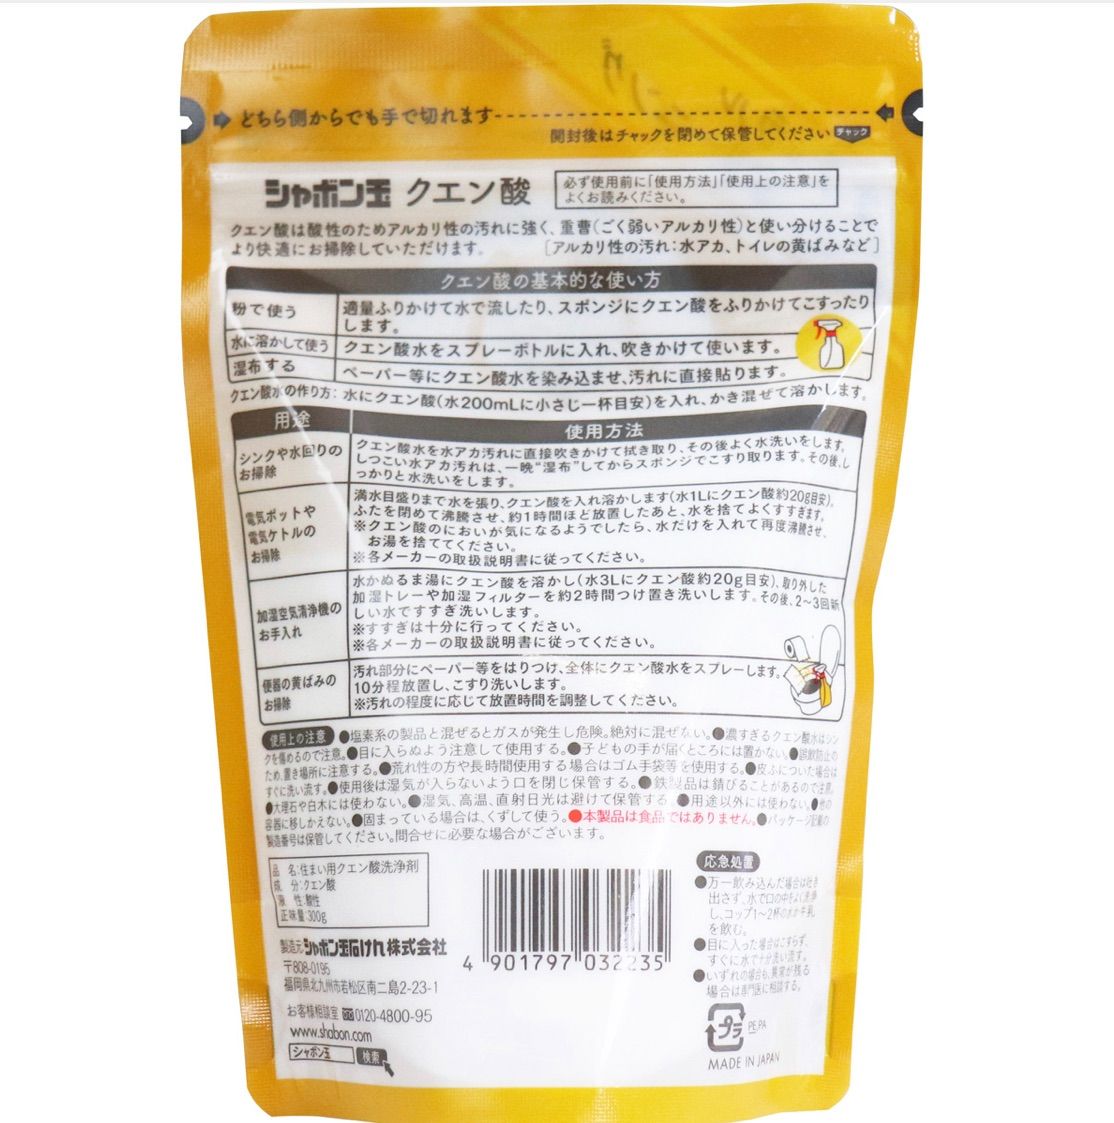 シャボン玉クエン酸300グラム 20袋1ケース - セレクトショップ